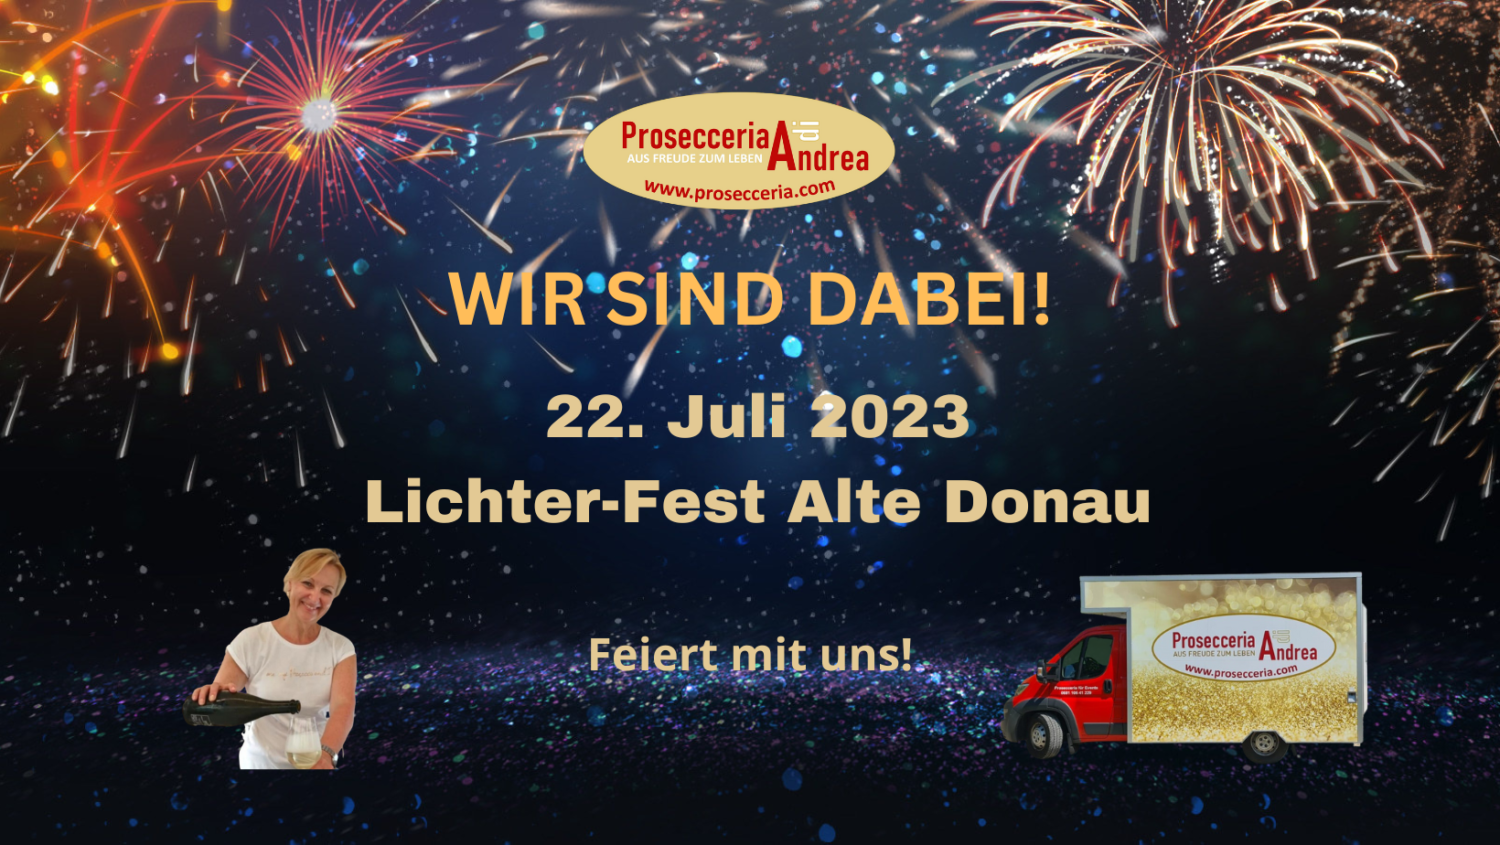 Die Prosecceria di Andrea ist am Samstag den 22. Juni ab 15.00 Uhr am Lichterfest bei der Alten Donau